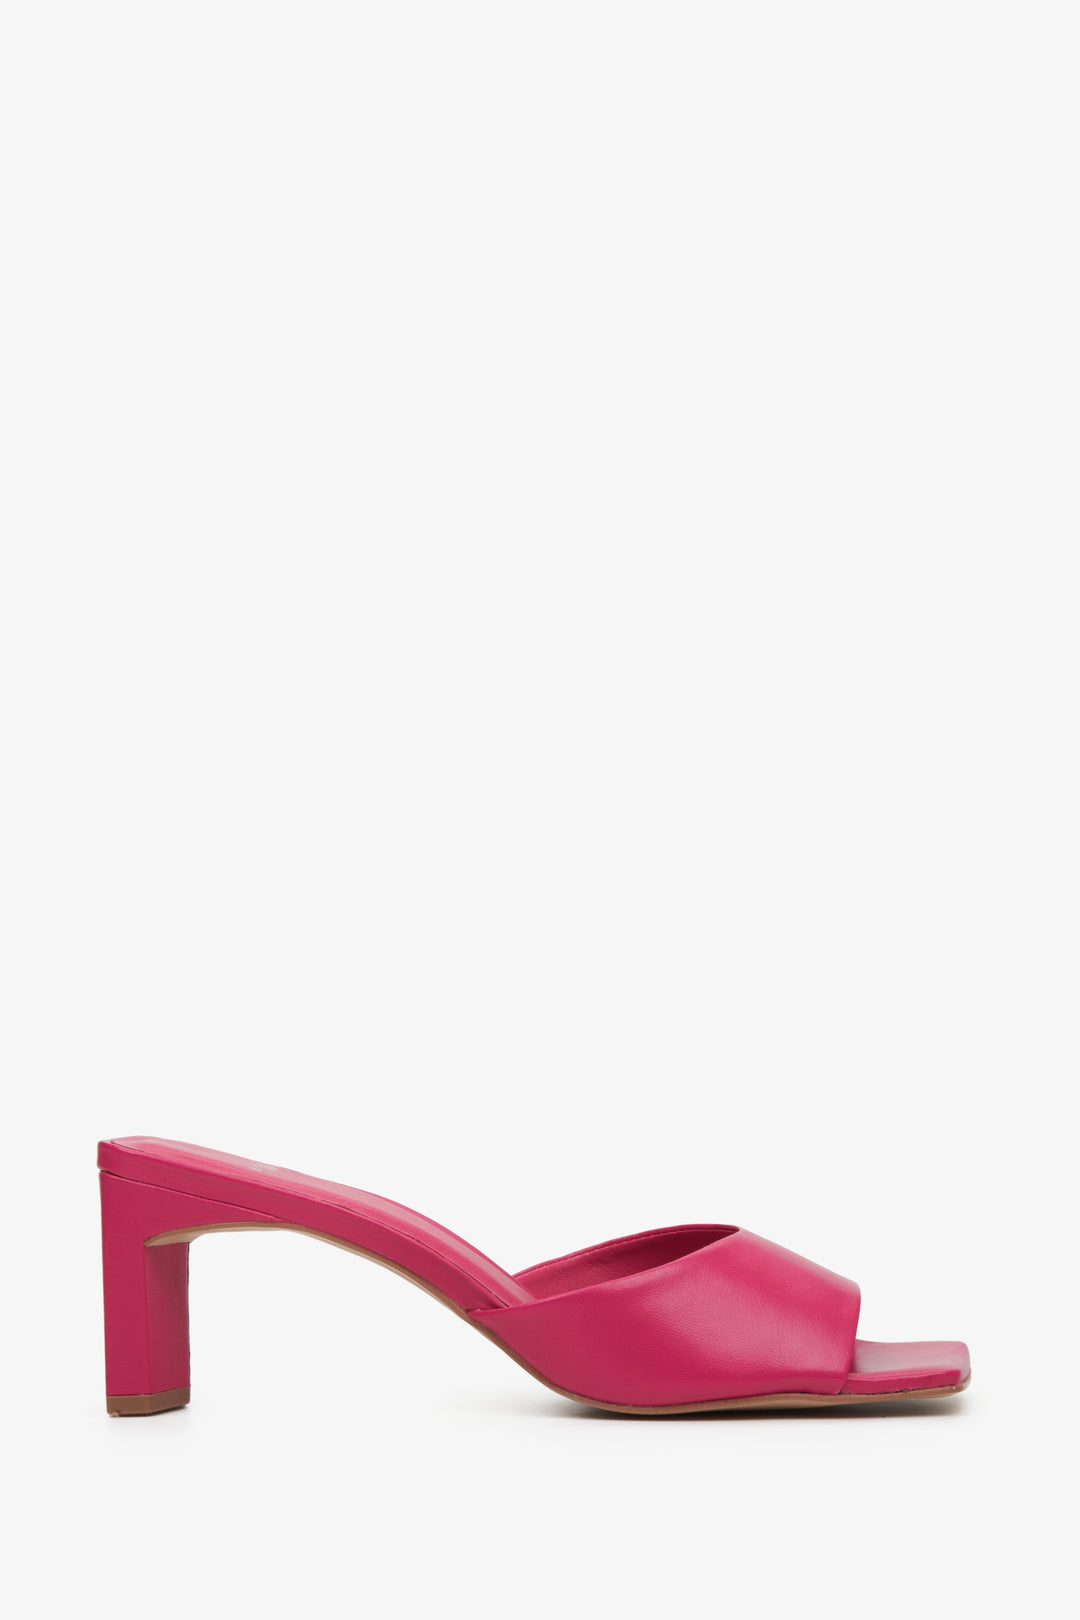 Skórzane klapki damskie na stabilnym słupku w kolorze różowym marki Estro - profil buta.